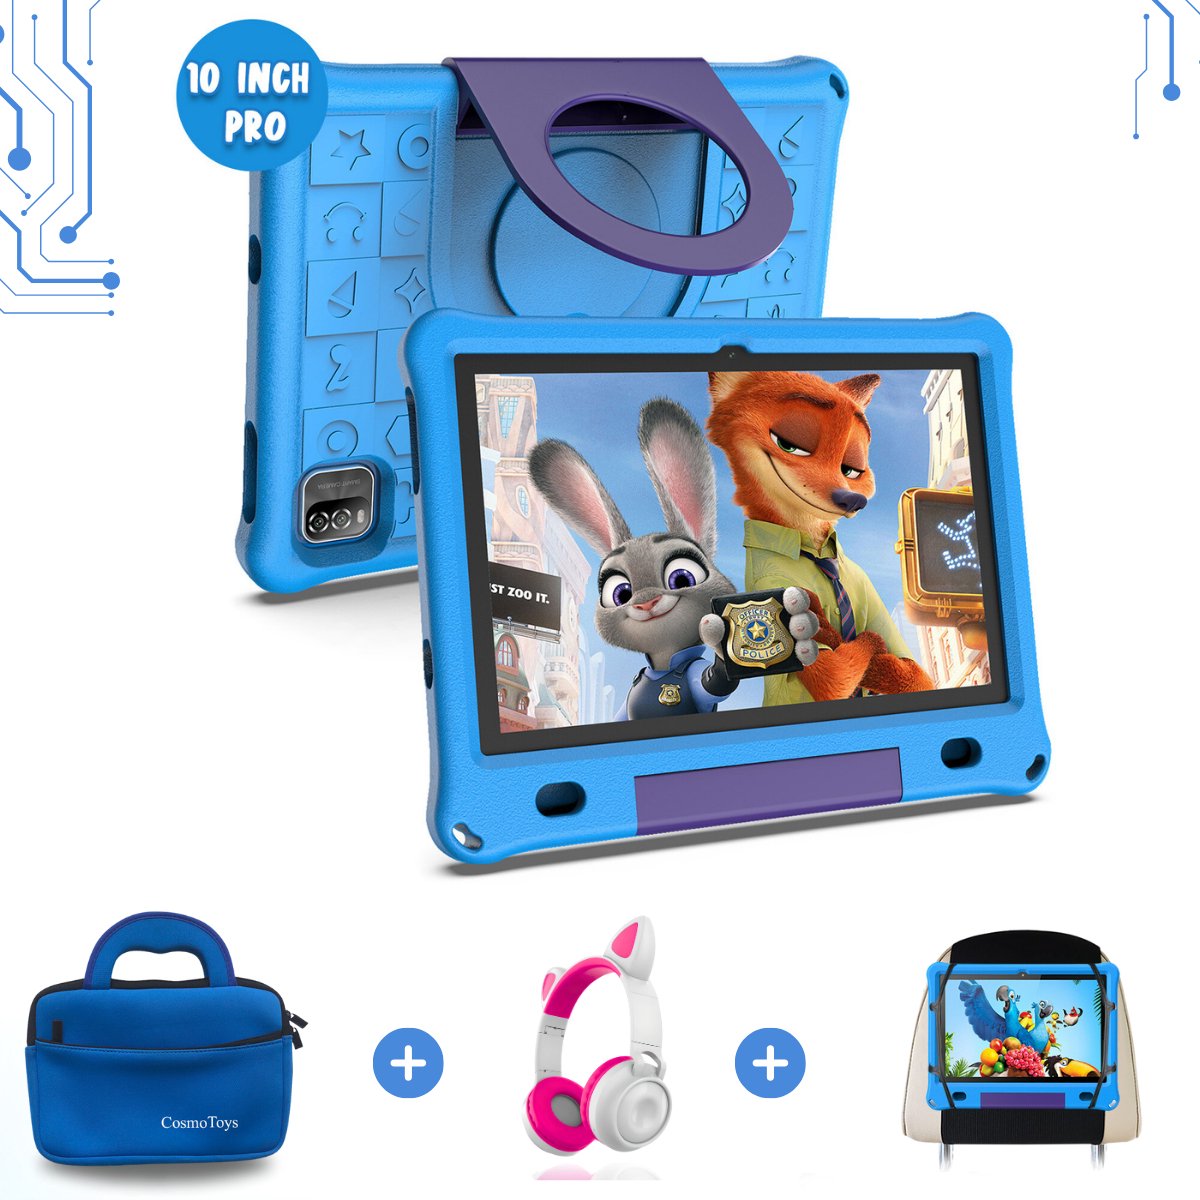 CosmoToys® Kids Tablet Kinderen PRO - Incl. Koptelefoon + Luxe Opbergtas + Tablethouder Auto - Kindertablet - Vanaf 3 Jaar - 10 Inch - Android 12 - Ouderlijk Toezicht - 6000 mAh - Blauw